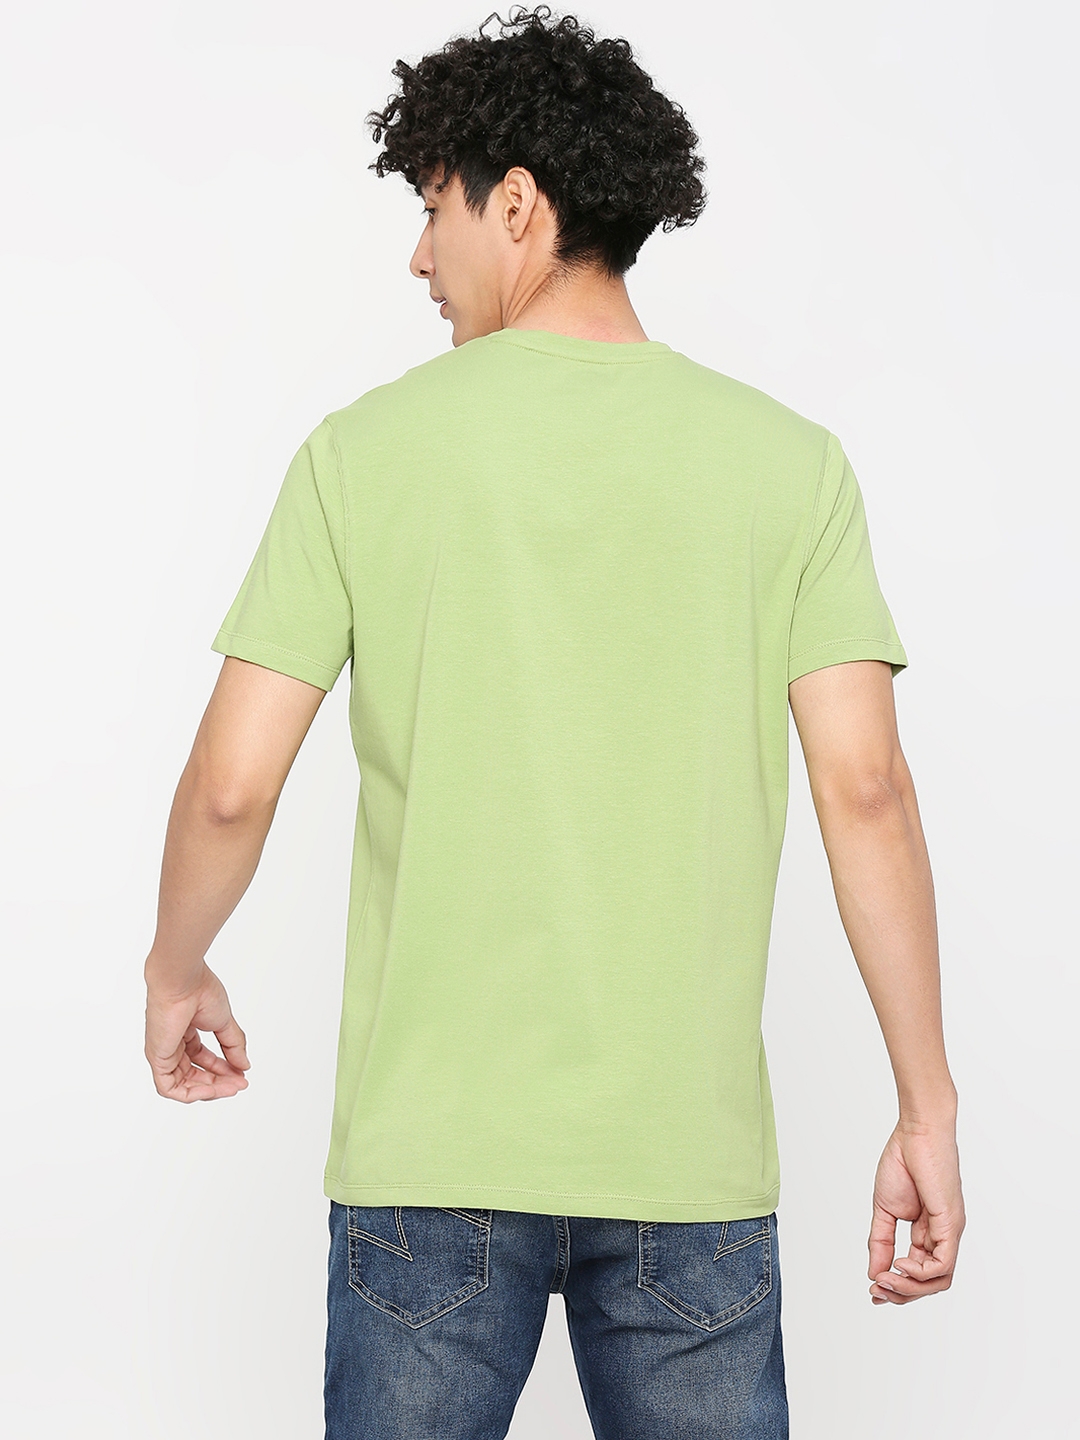 spykar | Spykar Men Dusty Pista Green Cotton Slim Fit Round Neck Printed Tshirt 3